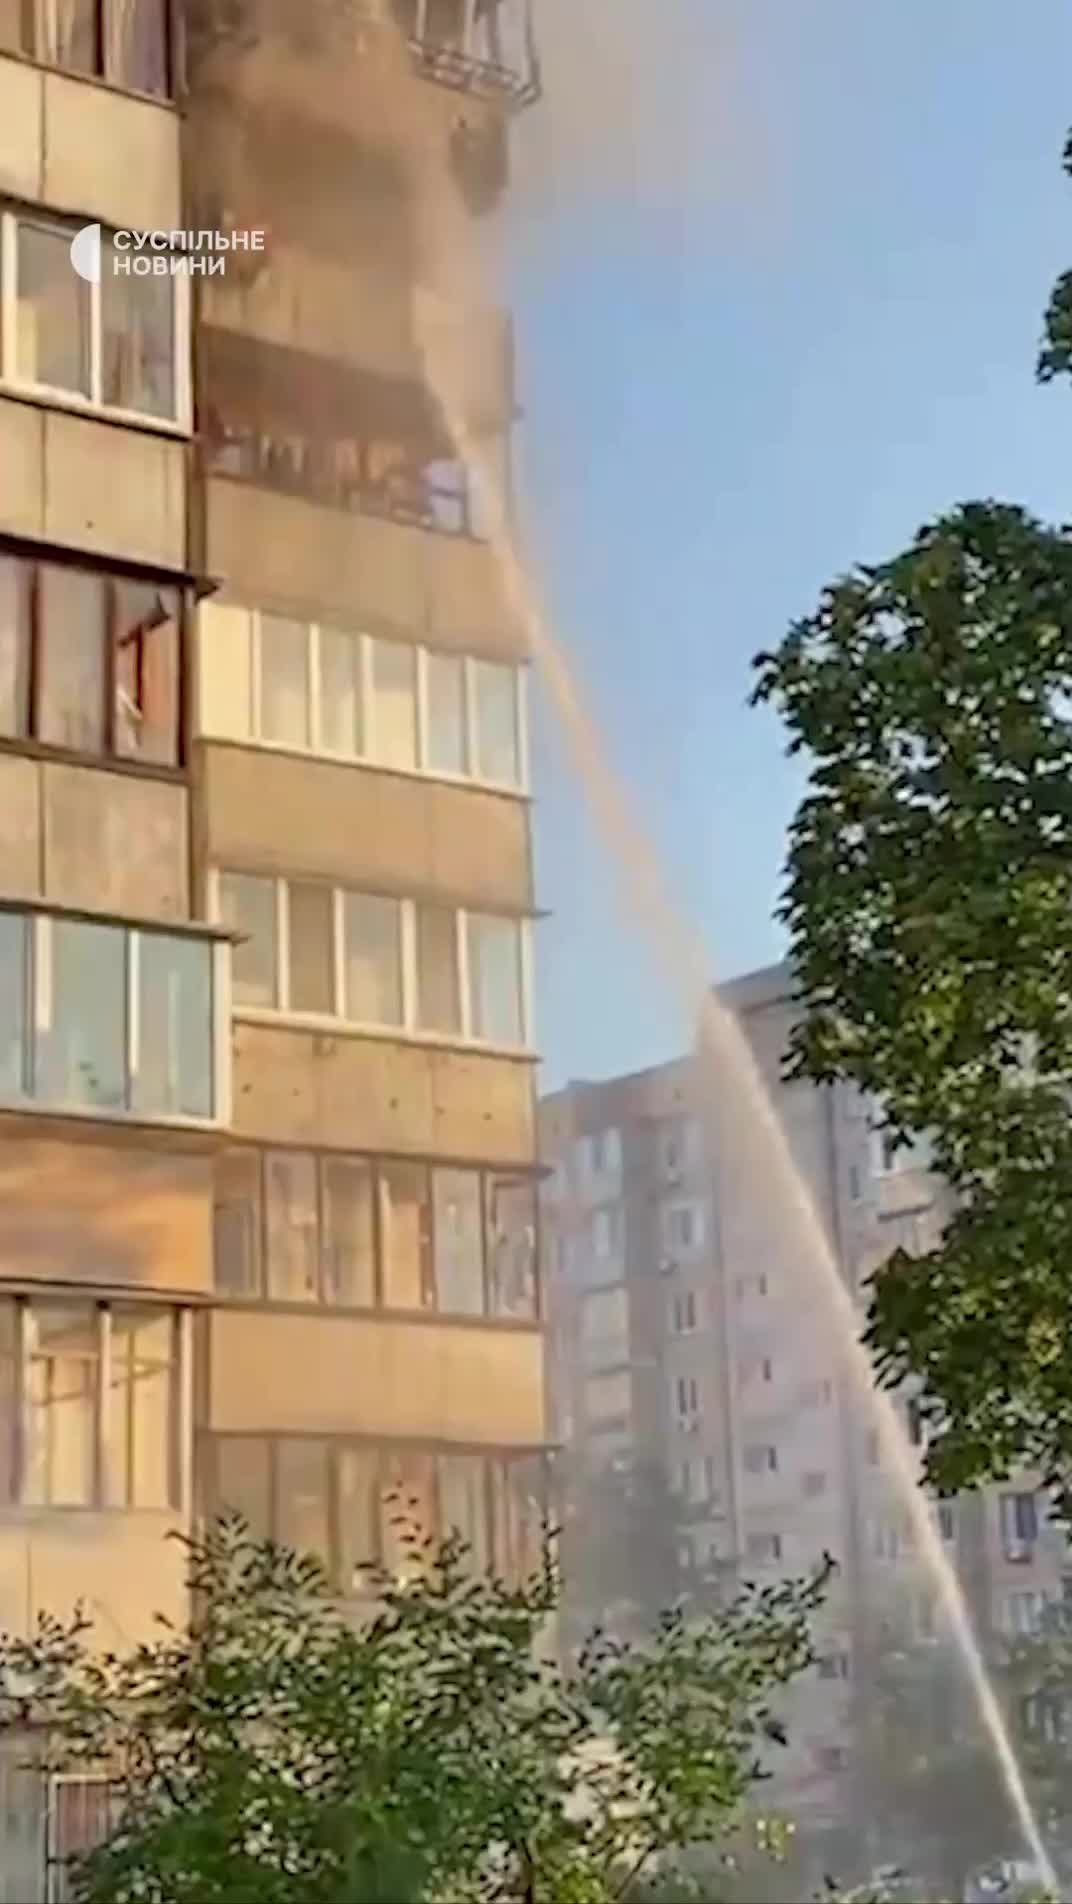 Wohngebäude durch russischen Raketenangriff im Kiewer Bezirk Obolonsky beschädigt